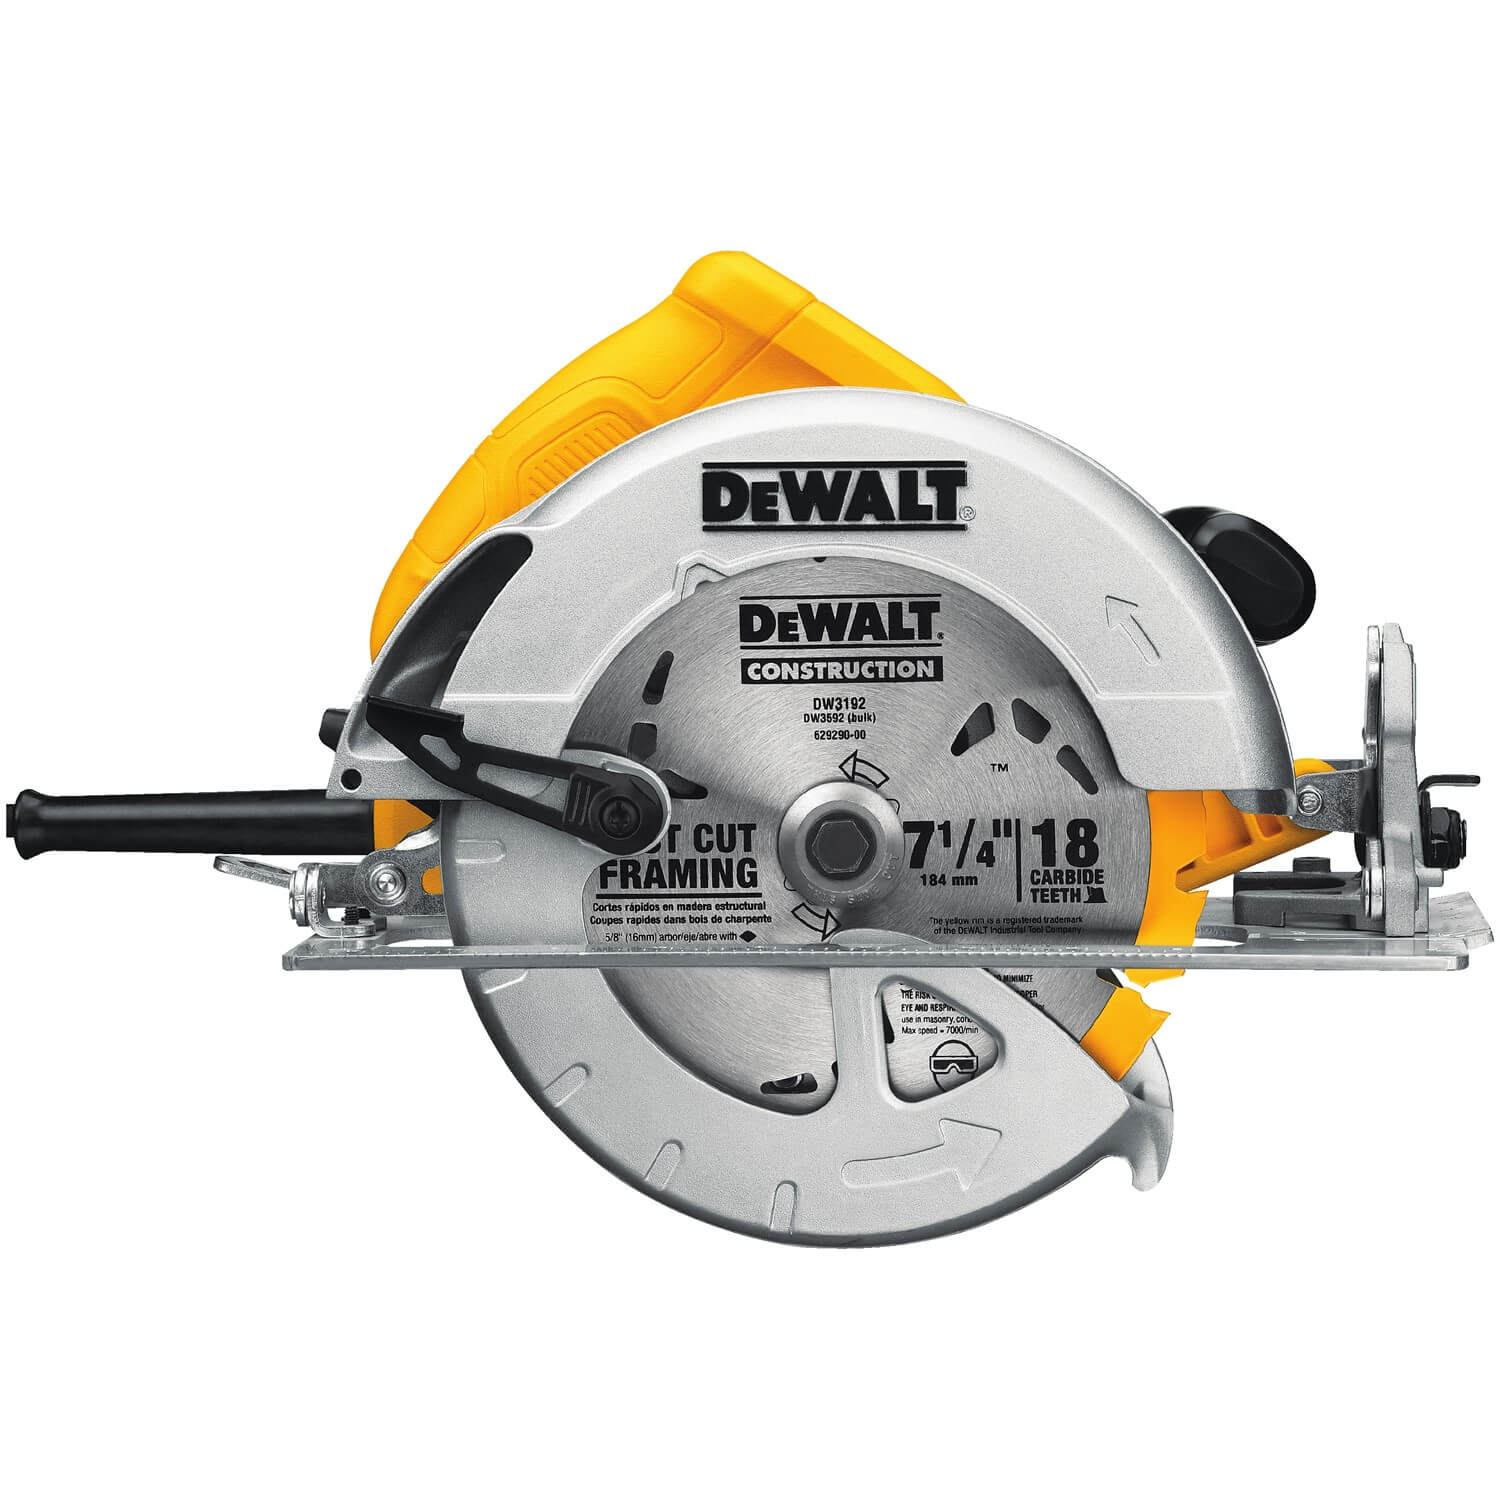 DEWALT DWE575 - 7-1/4-Inch Lightweight Circular Saw - wise-line-tools